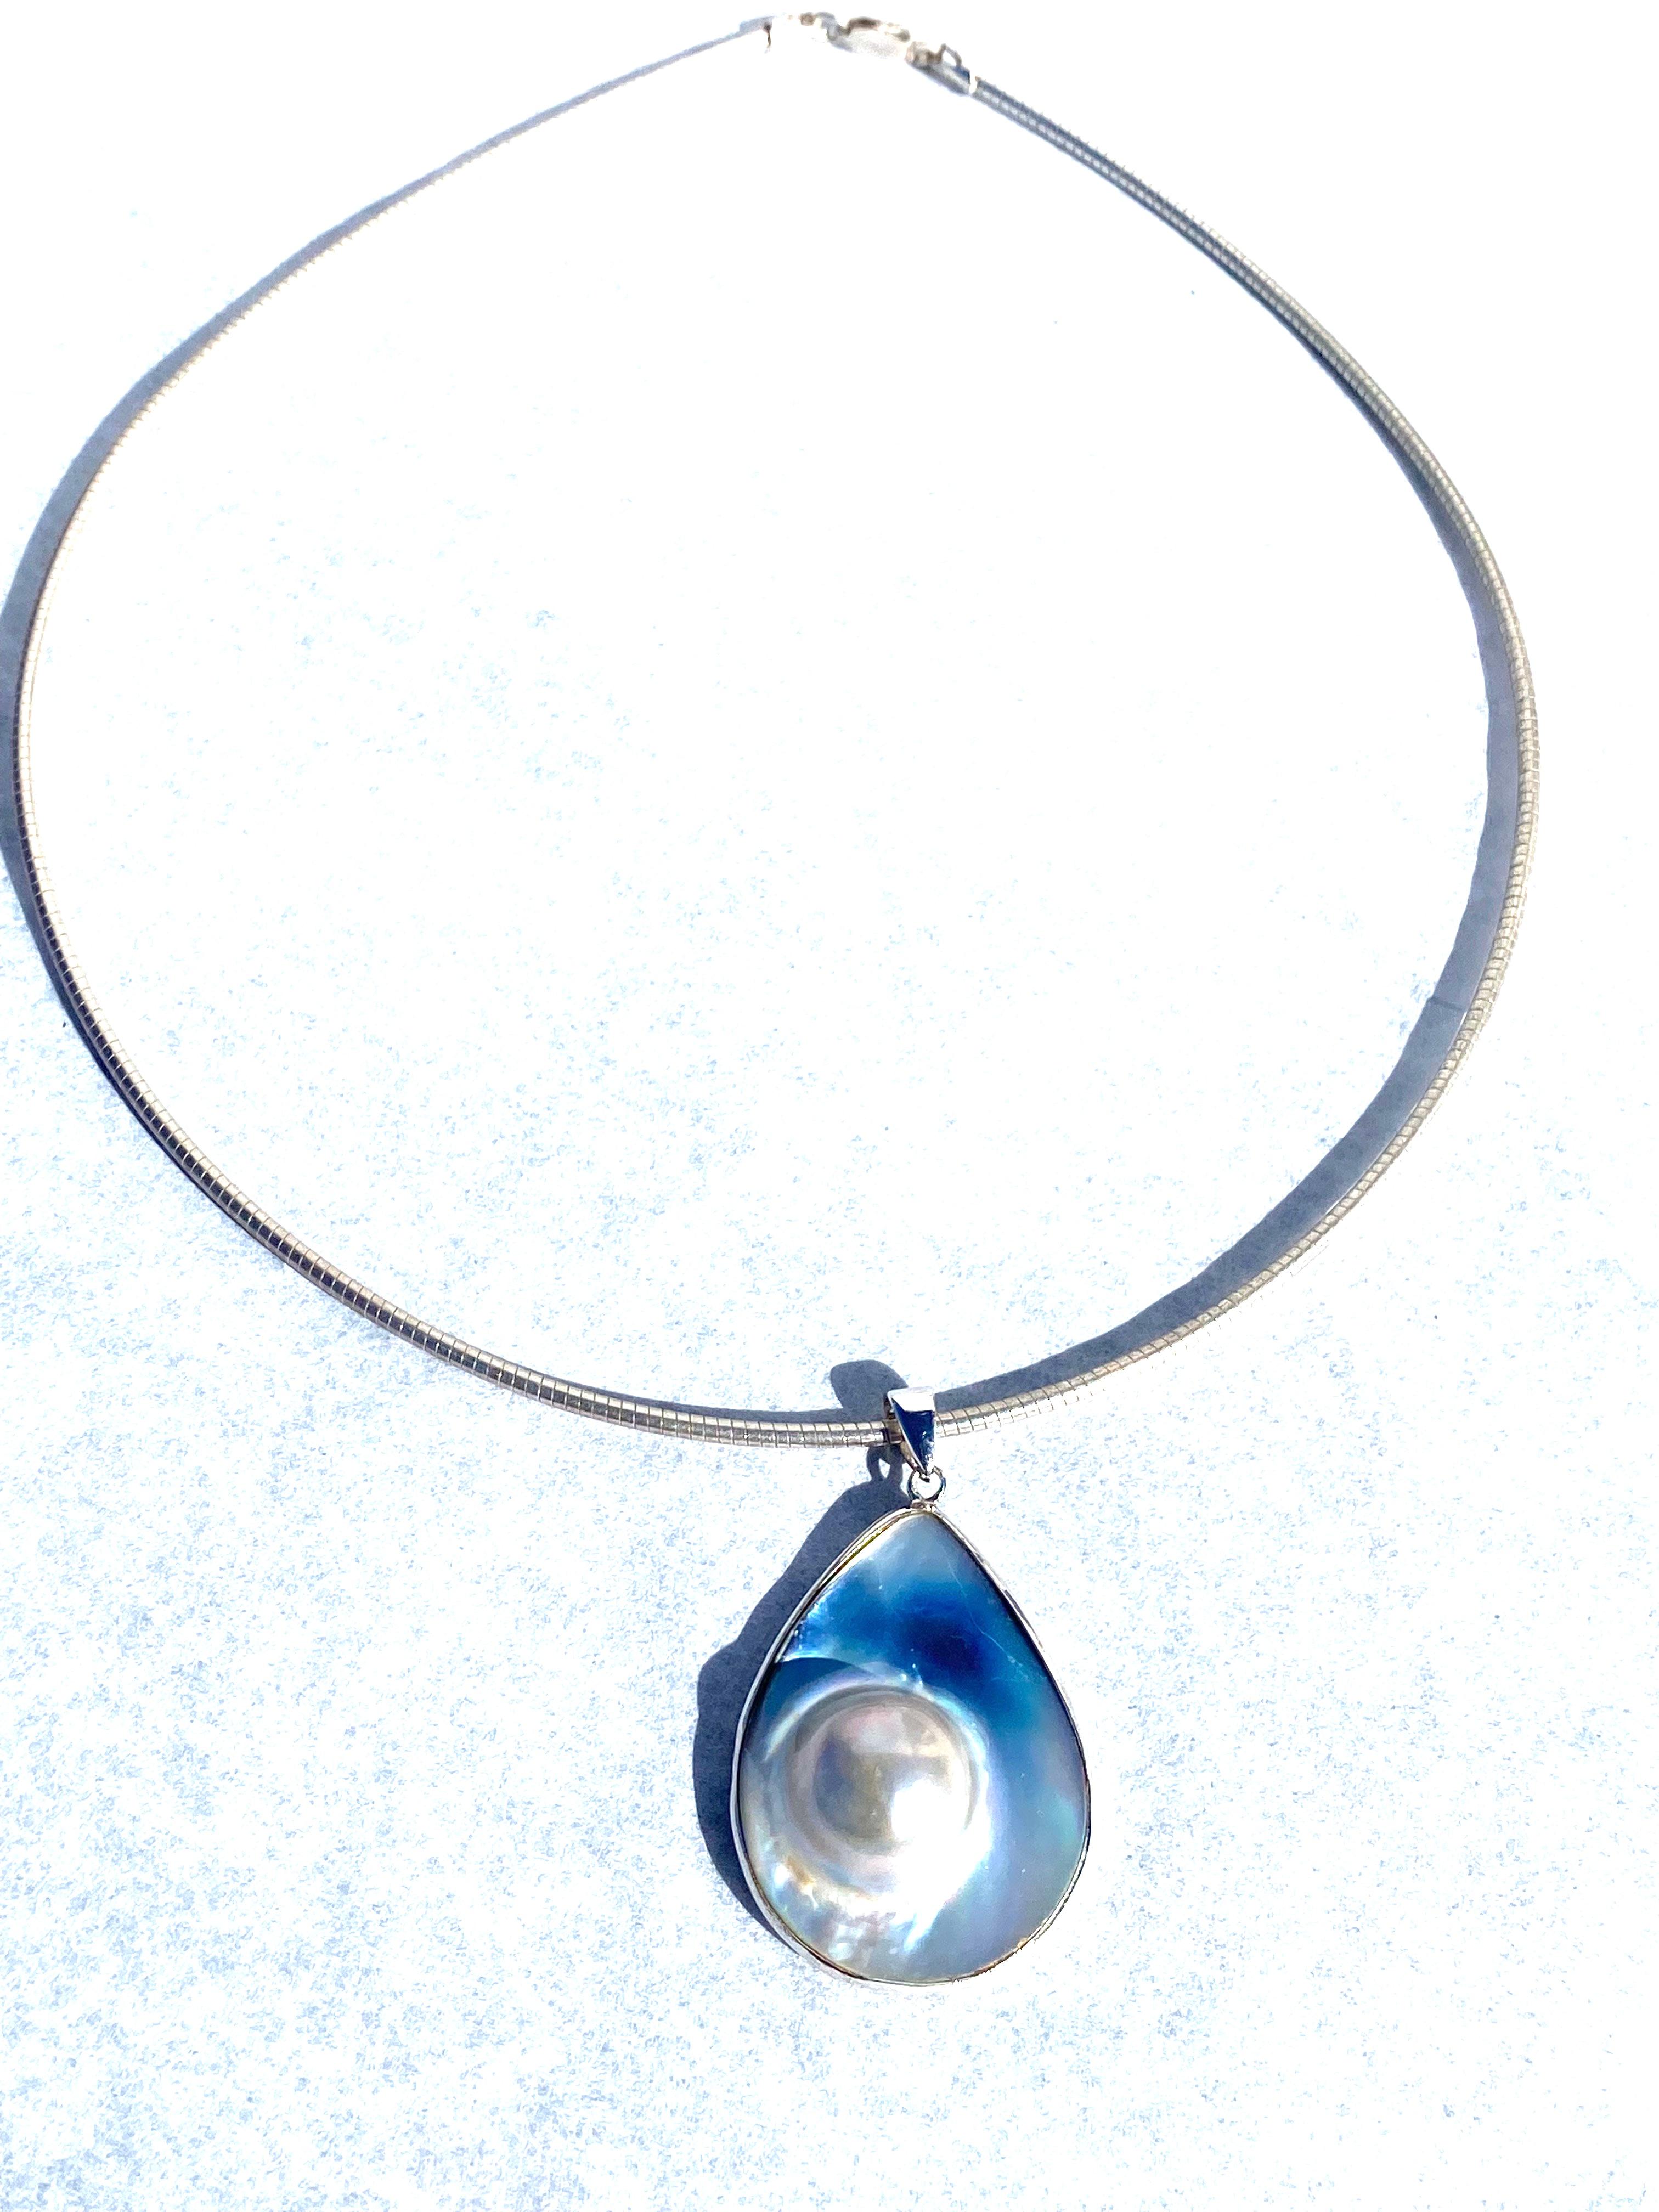 Contemporain Collier en nacre et perle irisée, fil métallique, pendentif en vente